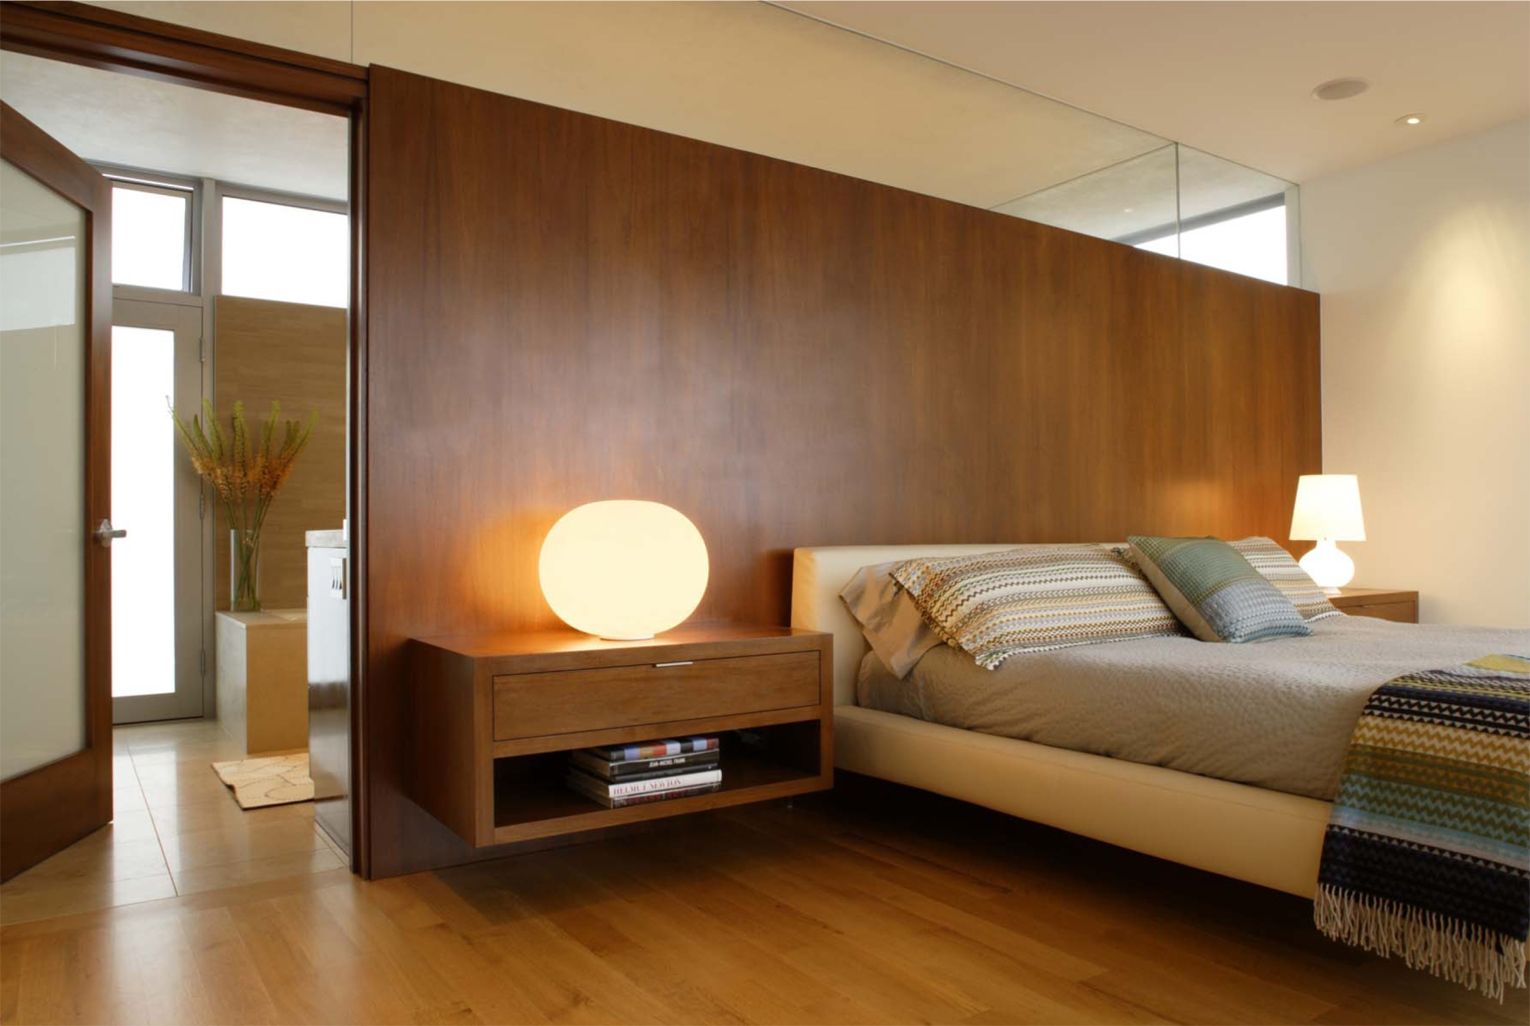 Bedrooms With Low Platform Beds, Built In Bed Frame Design